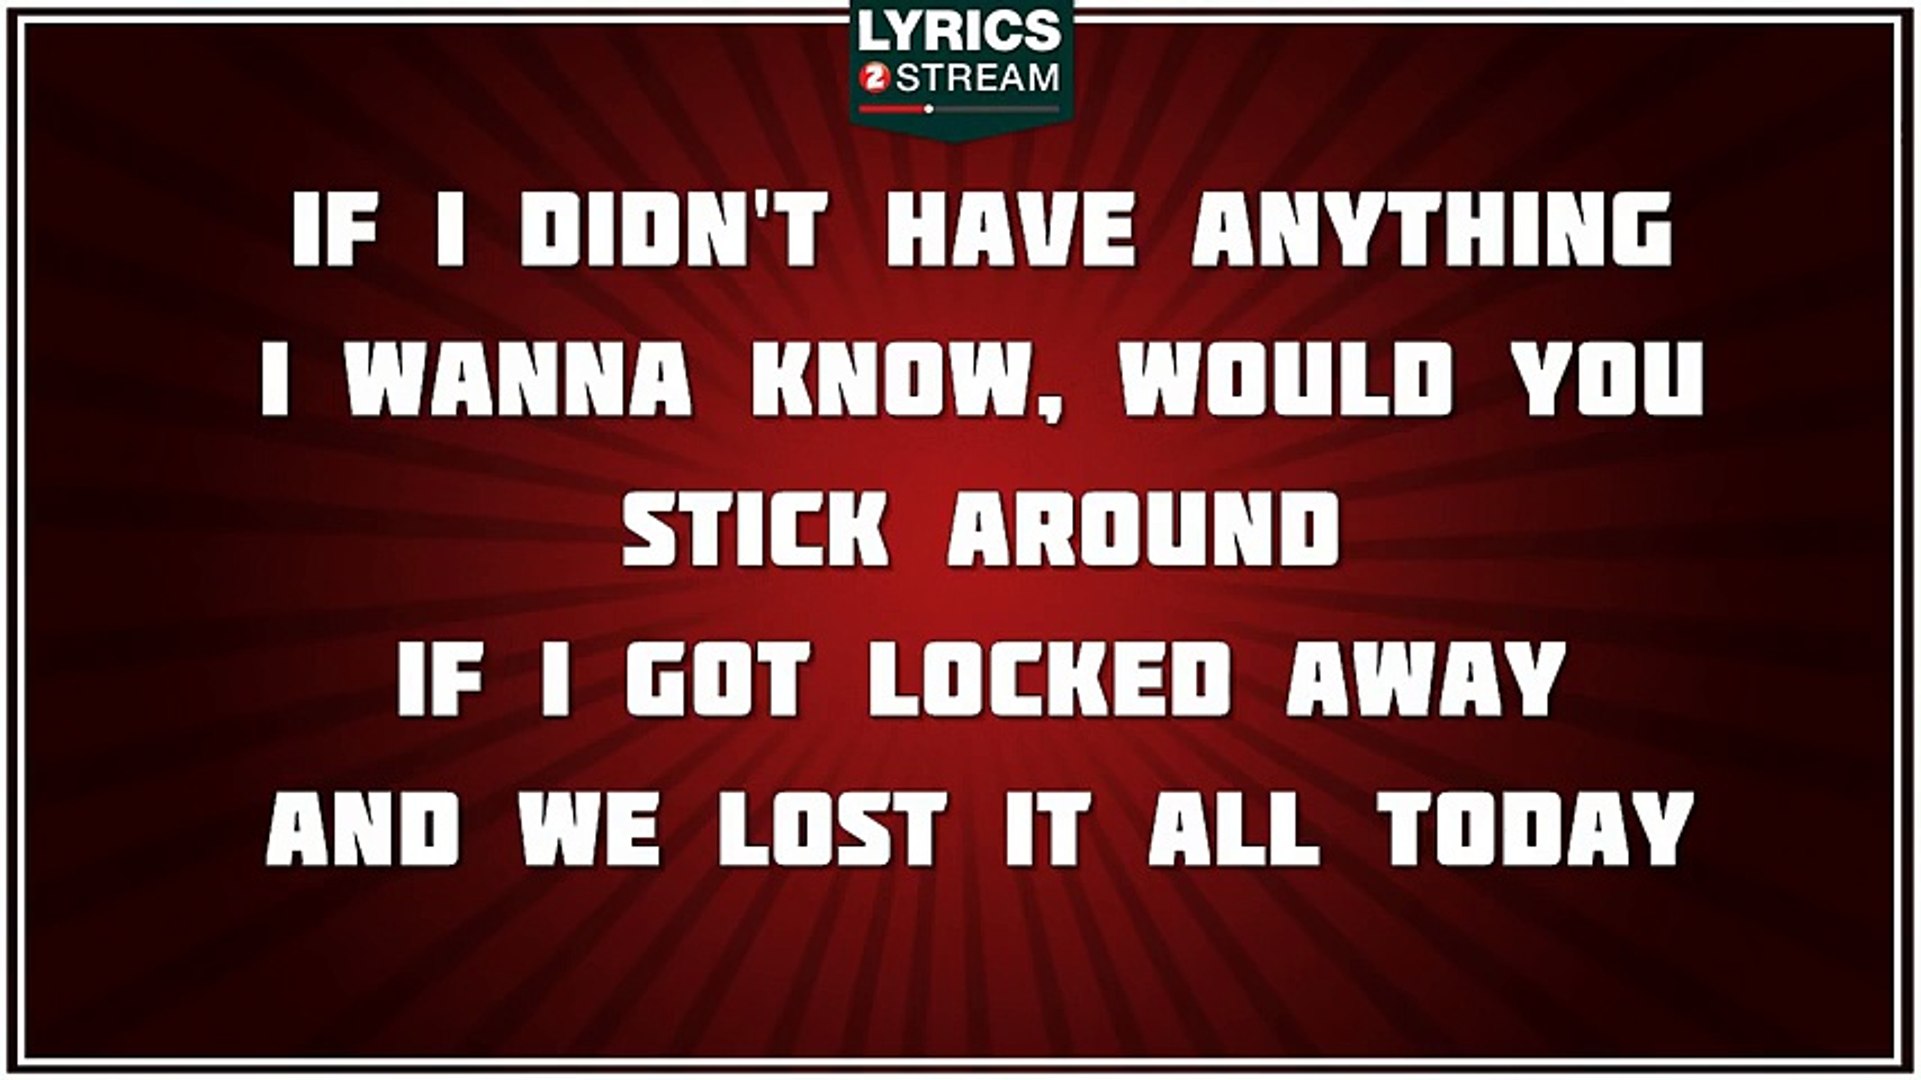 If i got locked away lyrics